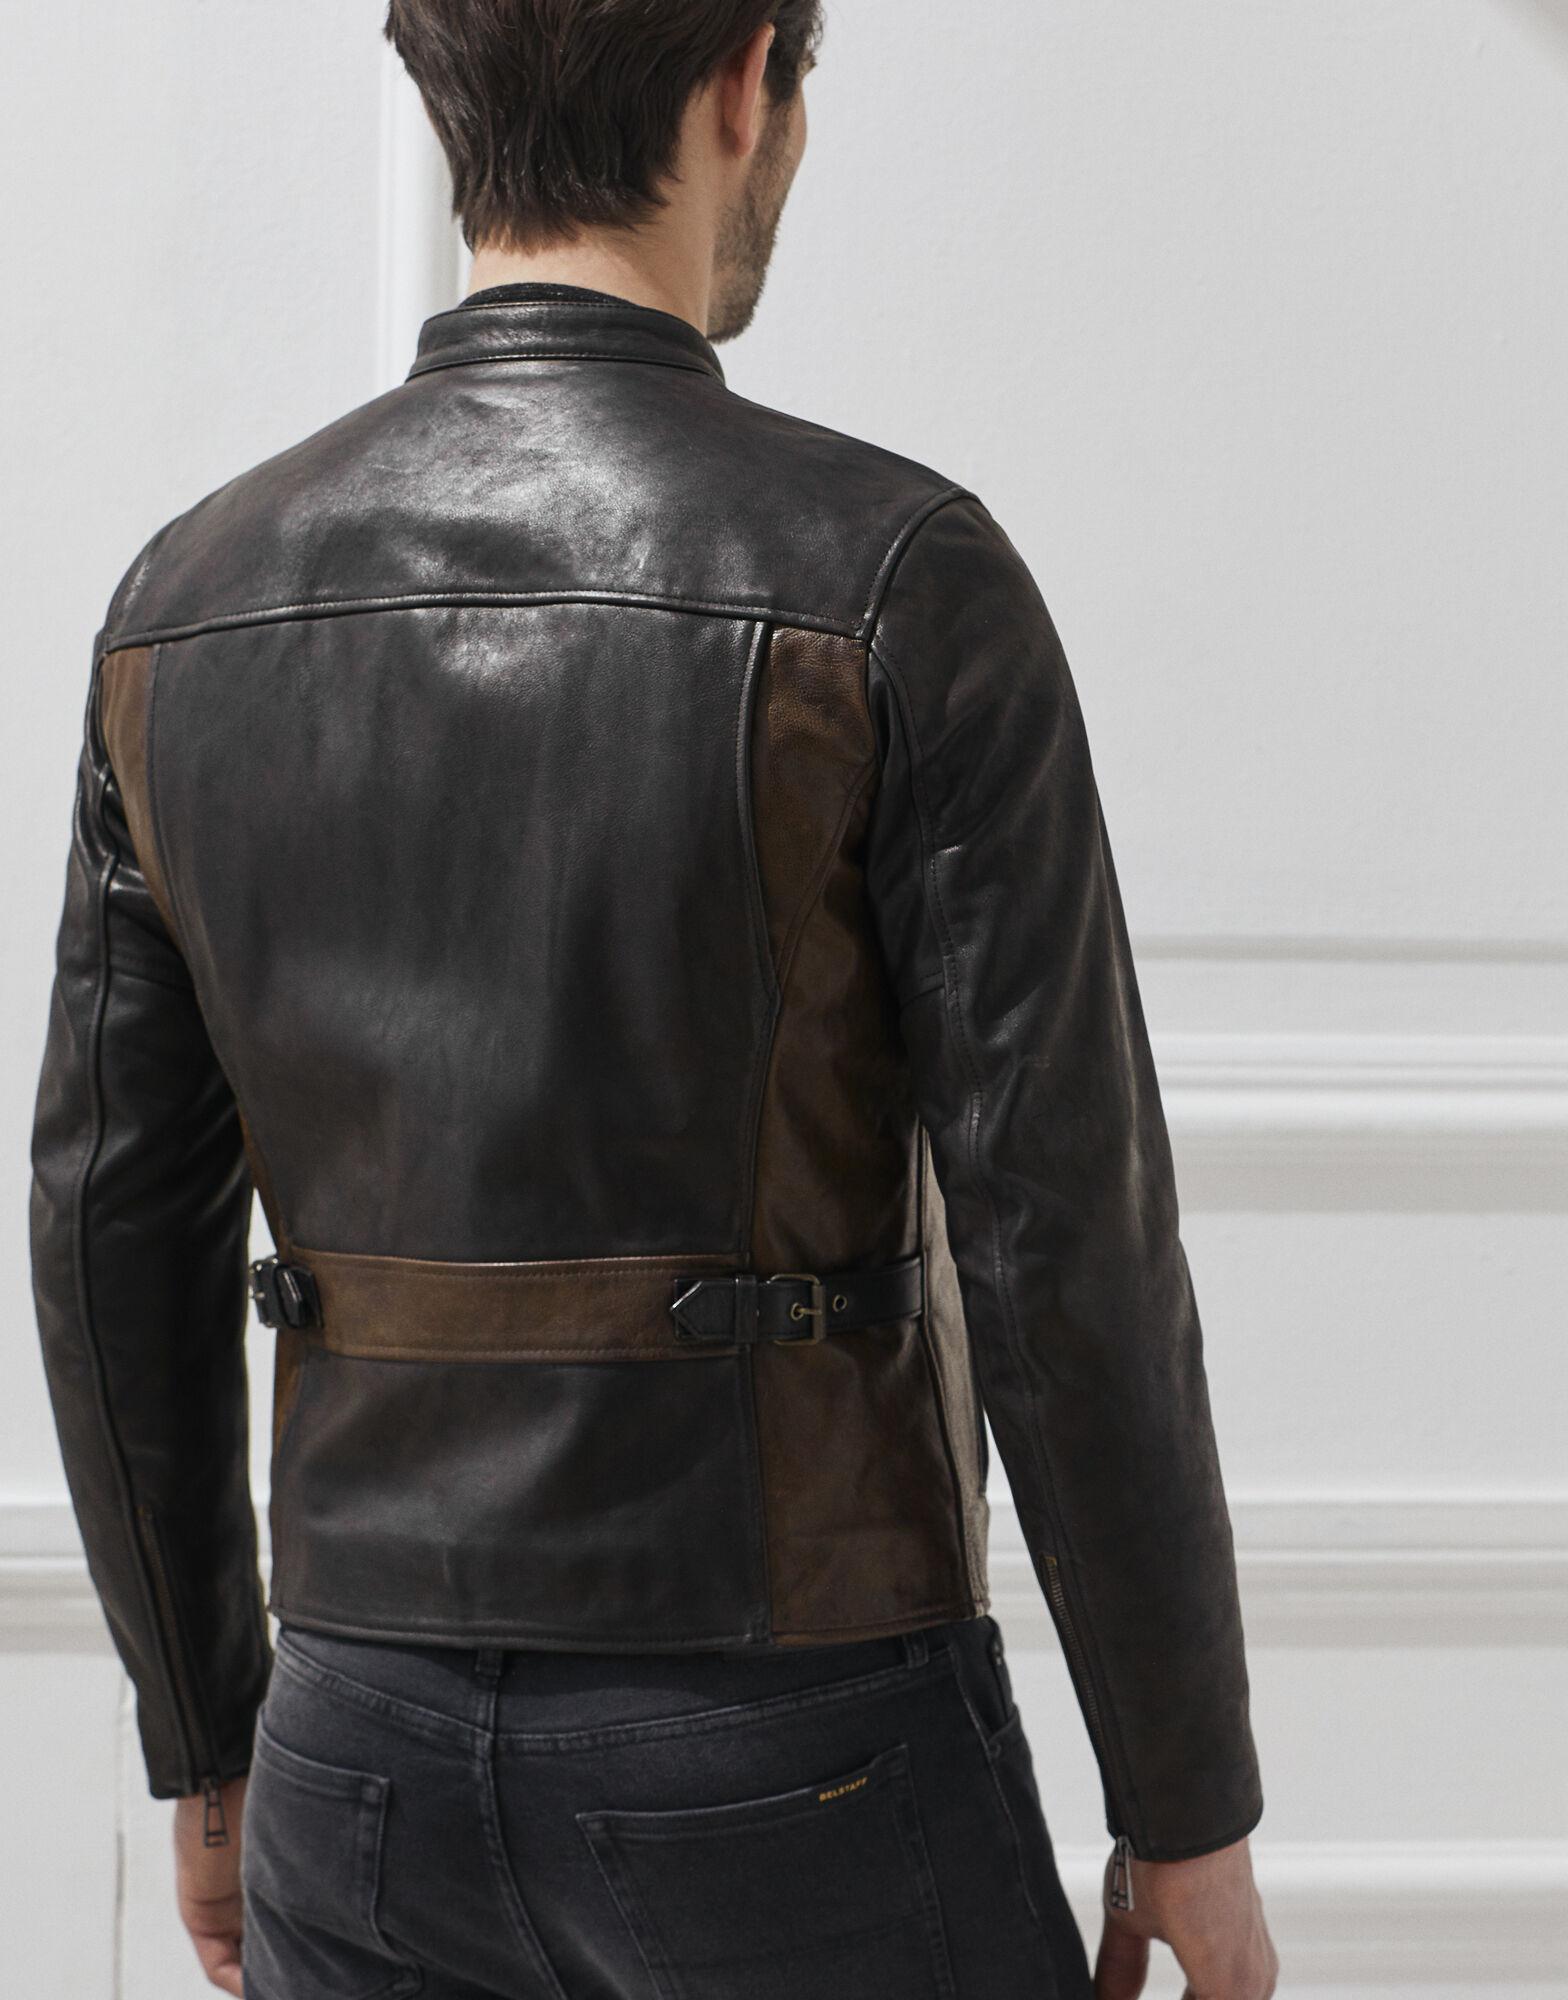 Belstaff Vincent Leather Jacket in Black for Men - Lyst